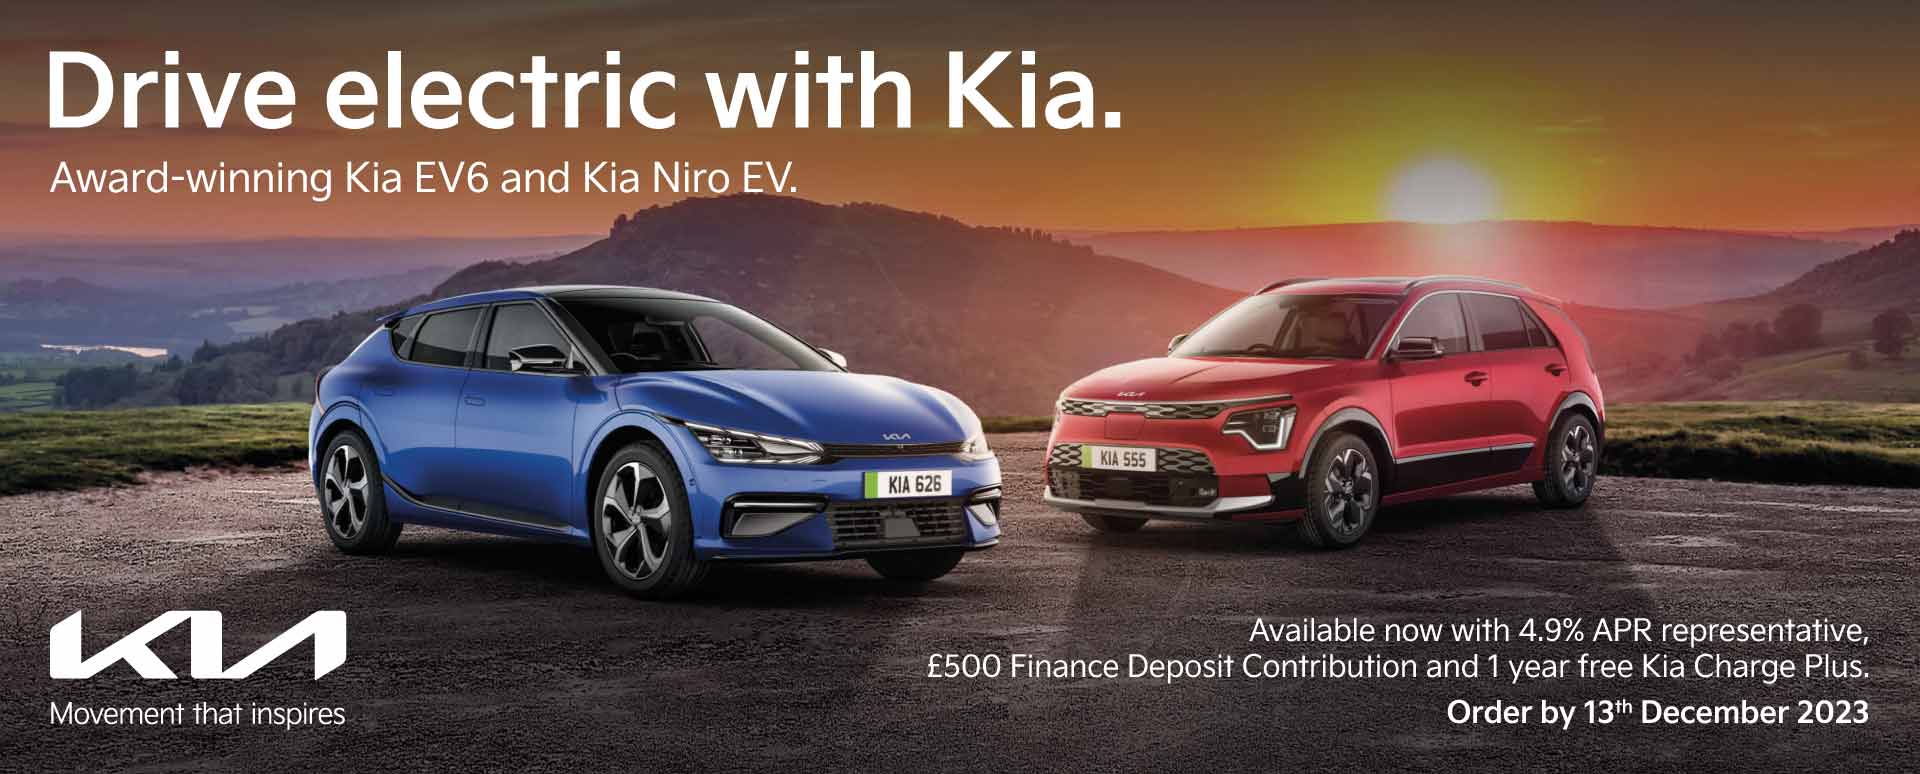 Kia Electric Campaign